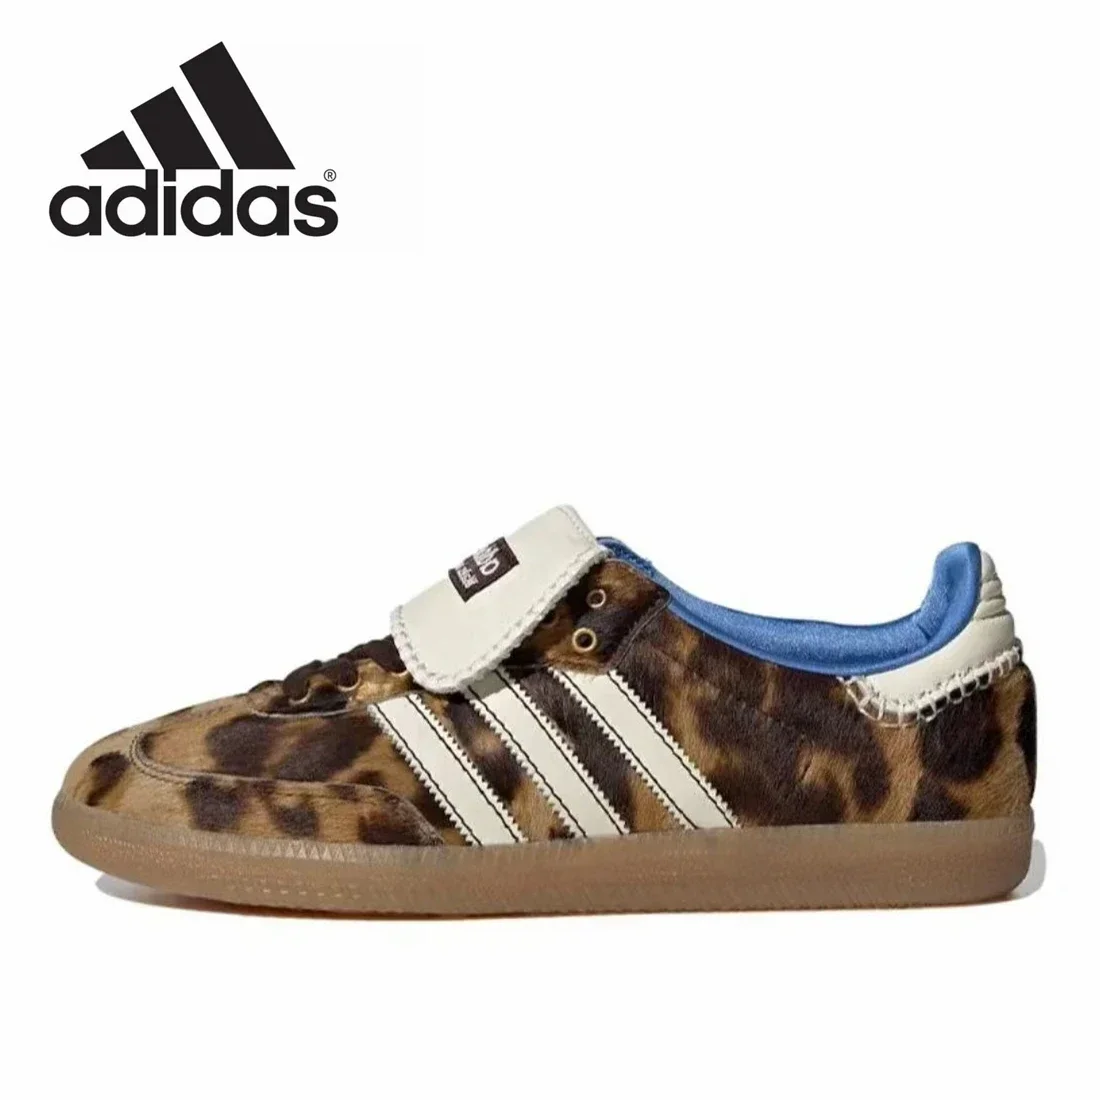 

Adidas Самба пони Уэльс Боннер леопардовая немецкая тренировочная обувь Газель Ретро универсальная спортивная и повседневная обувь для доски кроссовки